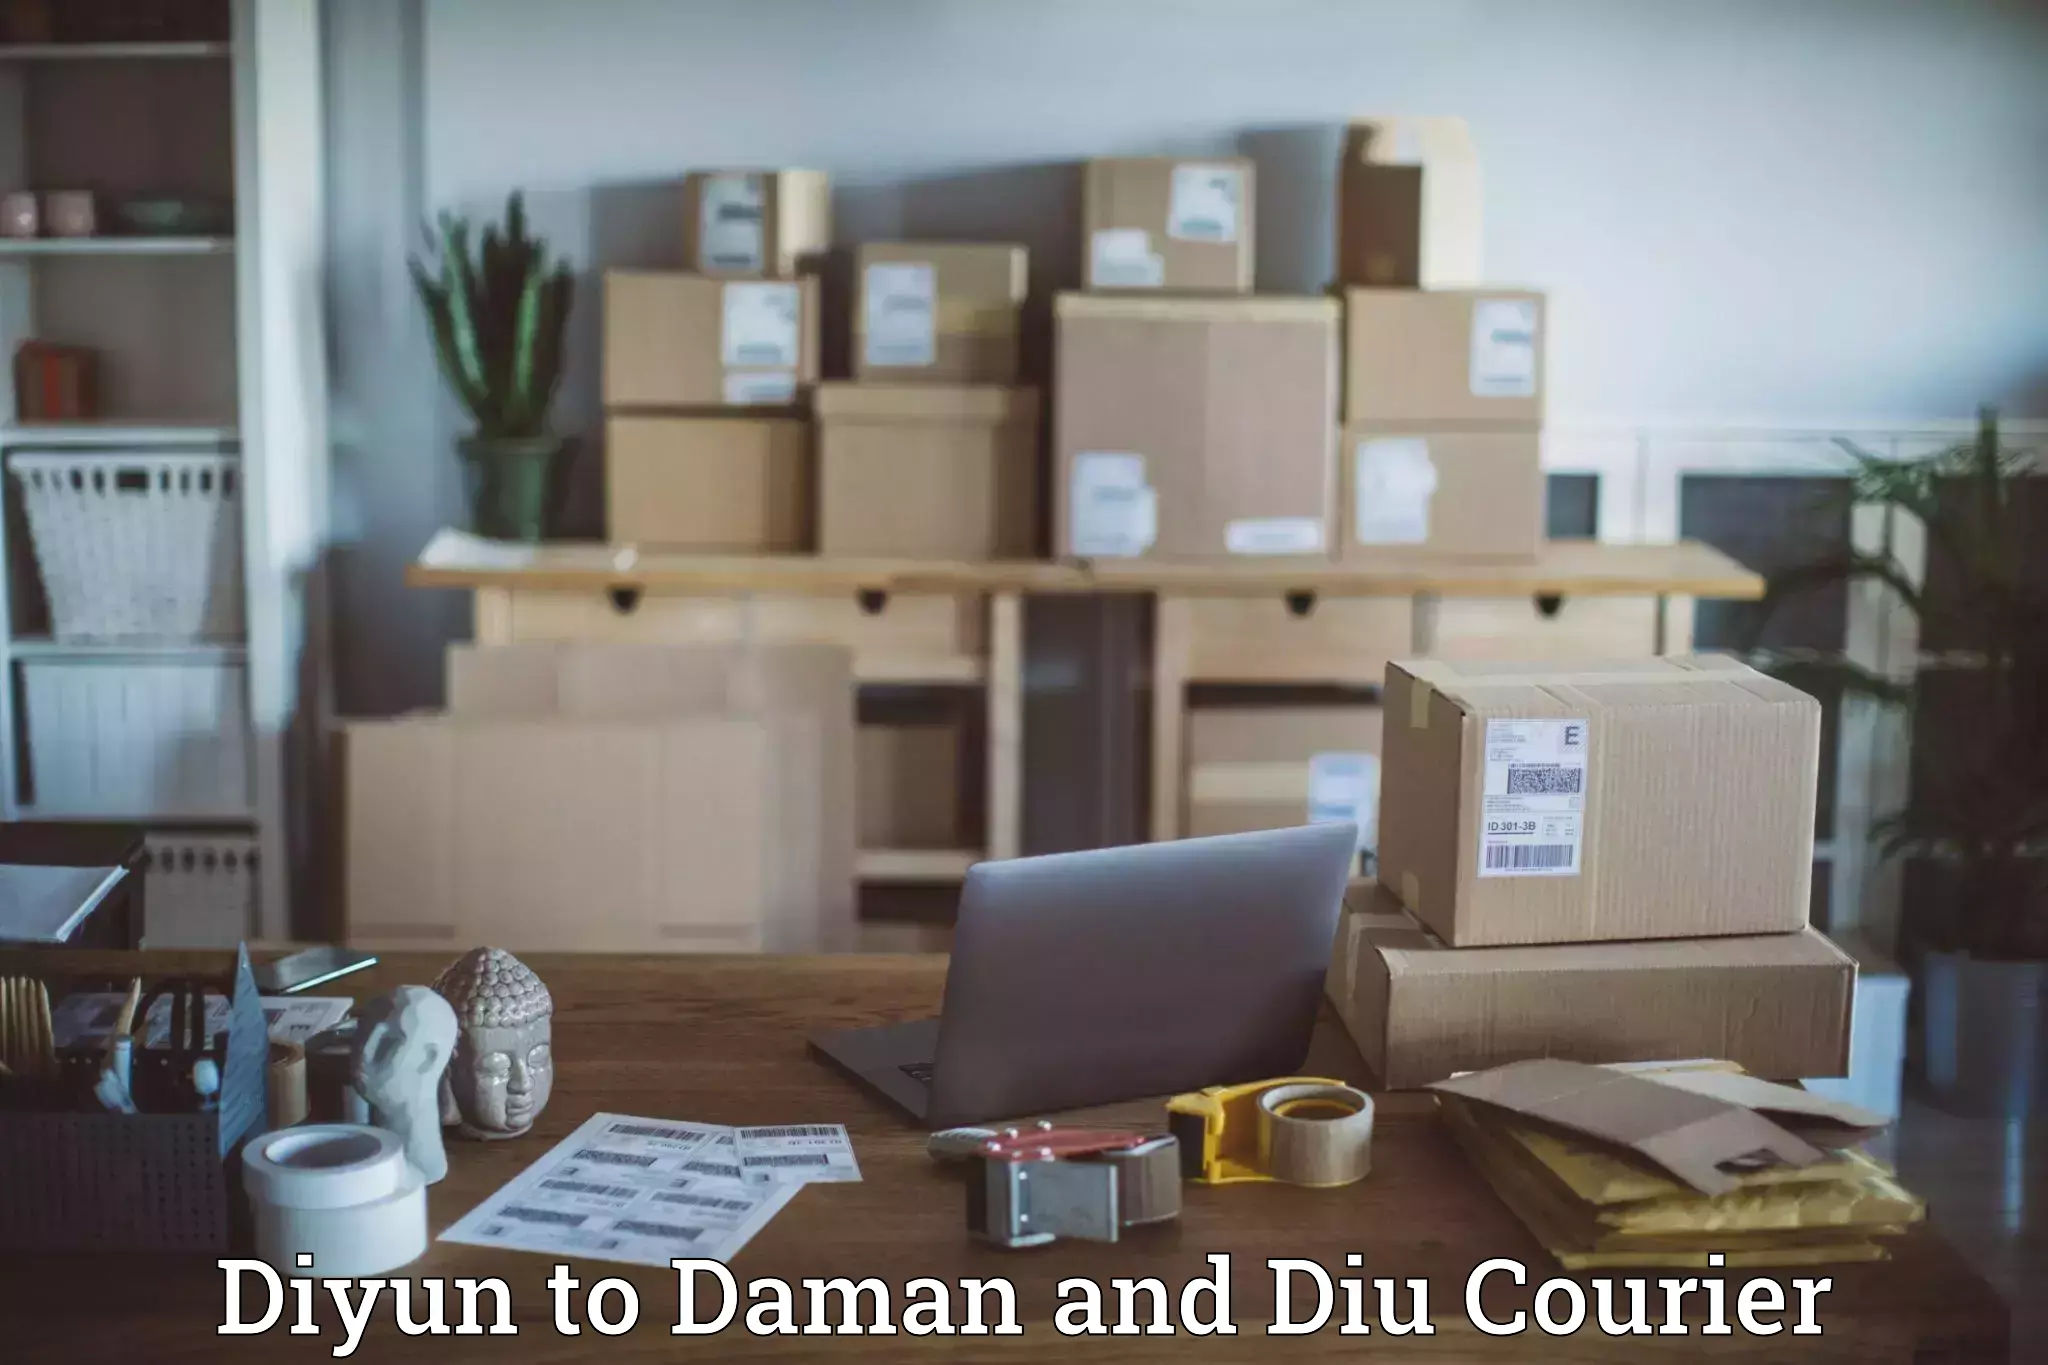 Express logistics providers Diyun to Diu